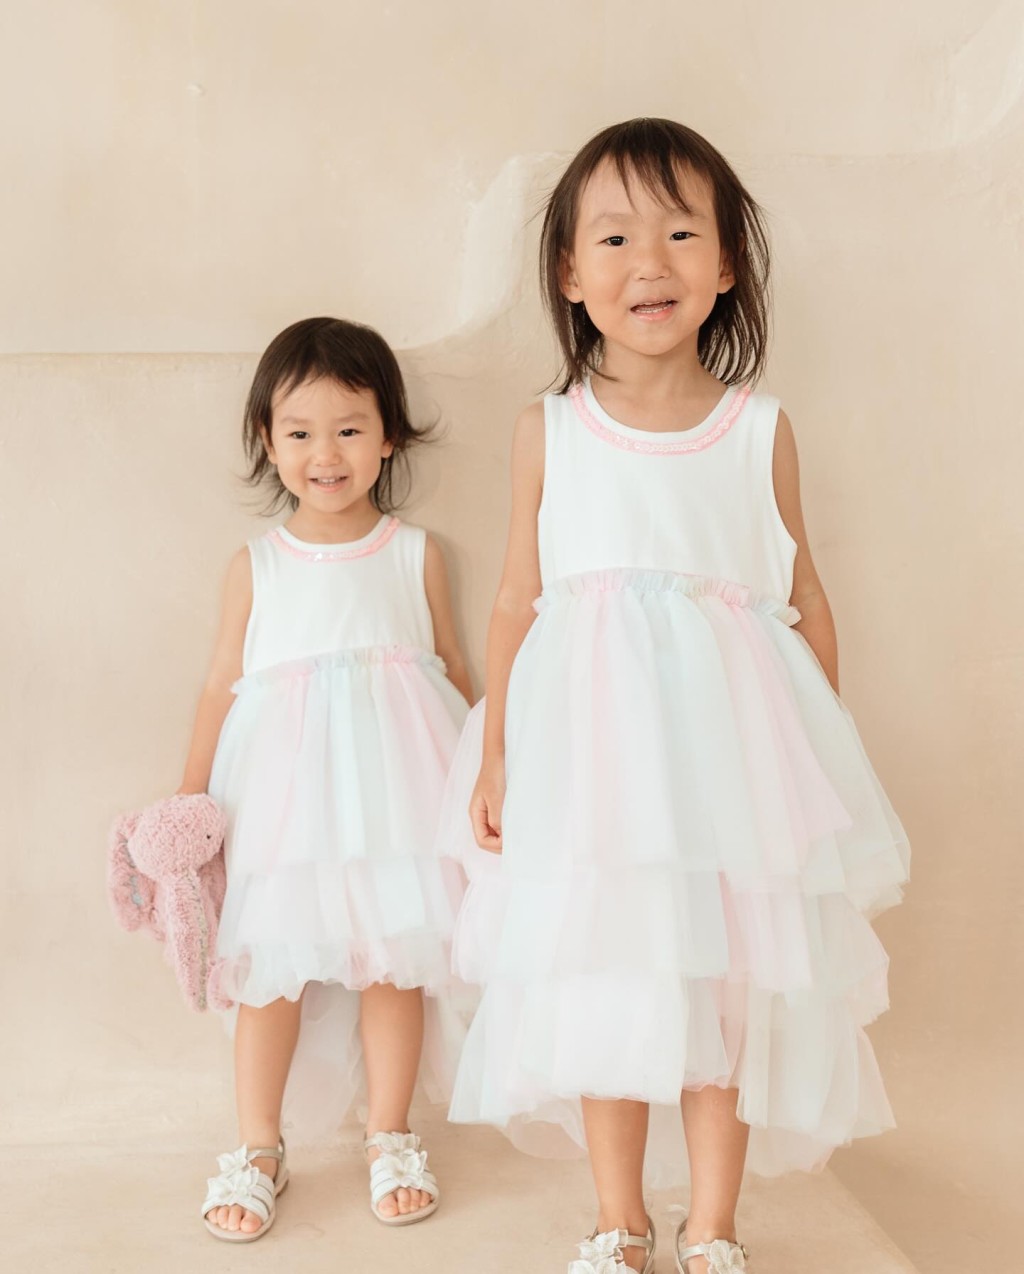 李雪瑩的兩個囡囡穿上姊妹裝。